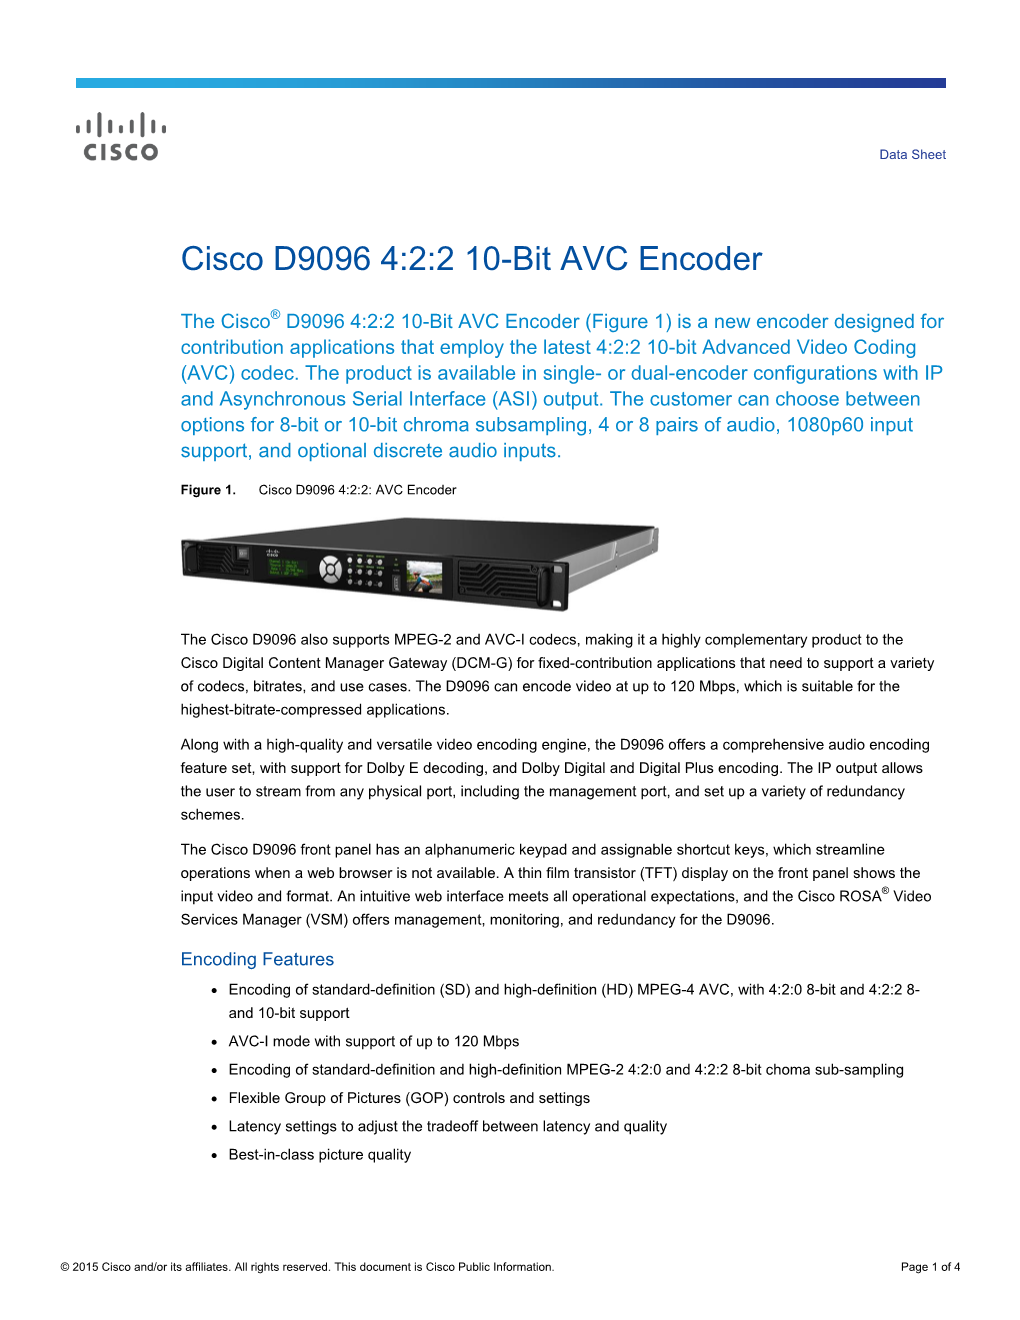 Cisco D9096 4:2:2 10-Bit AVC Encoder Data Sheet